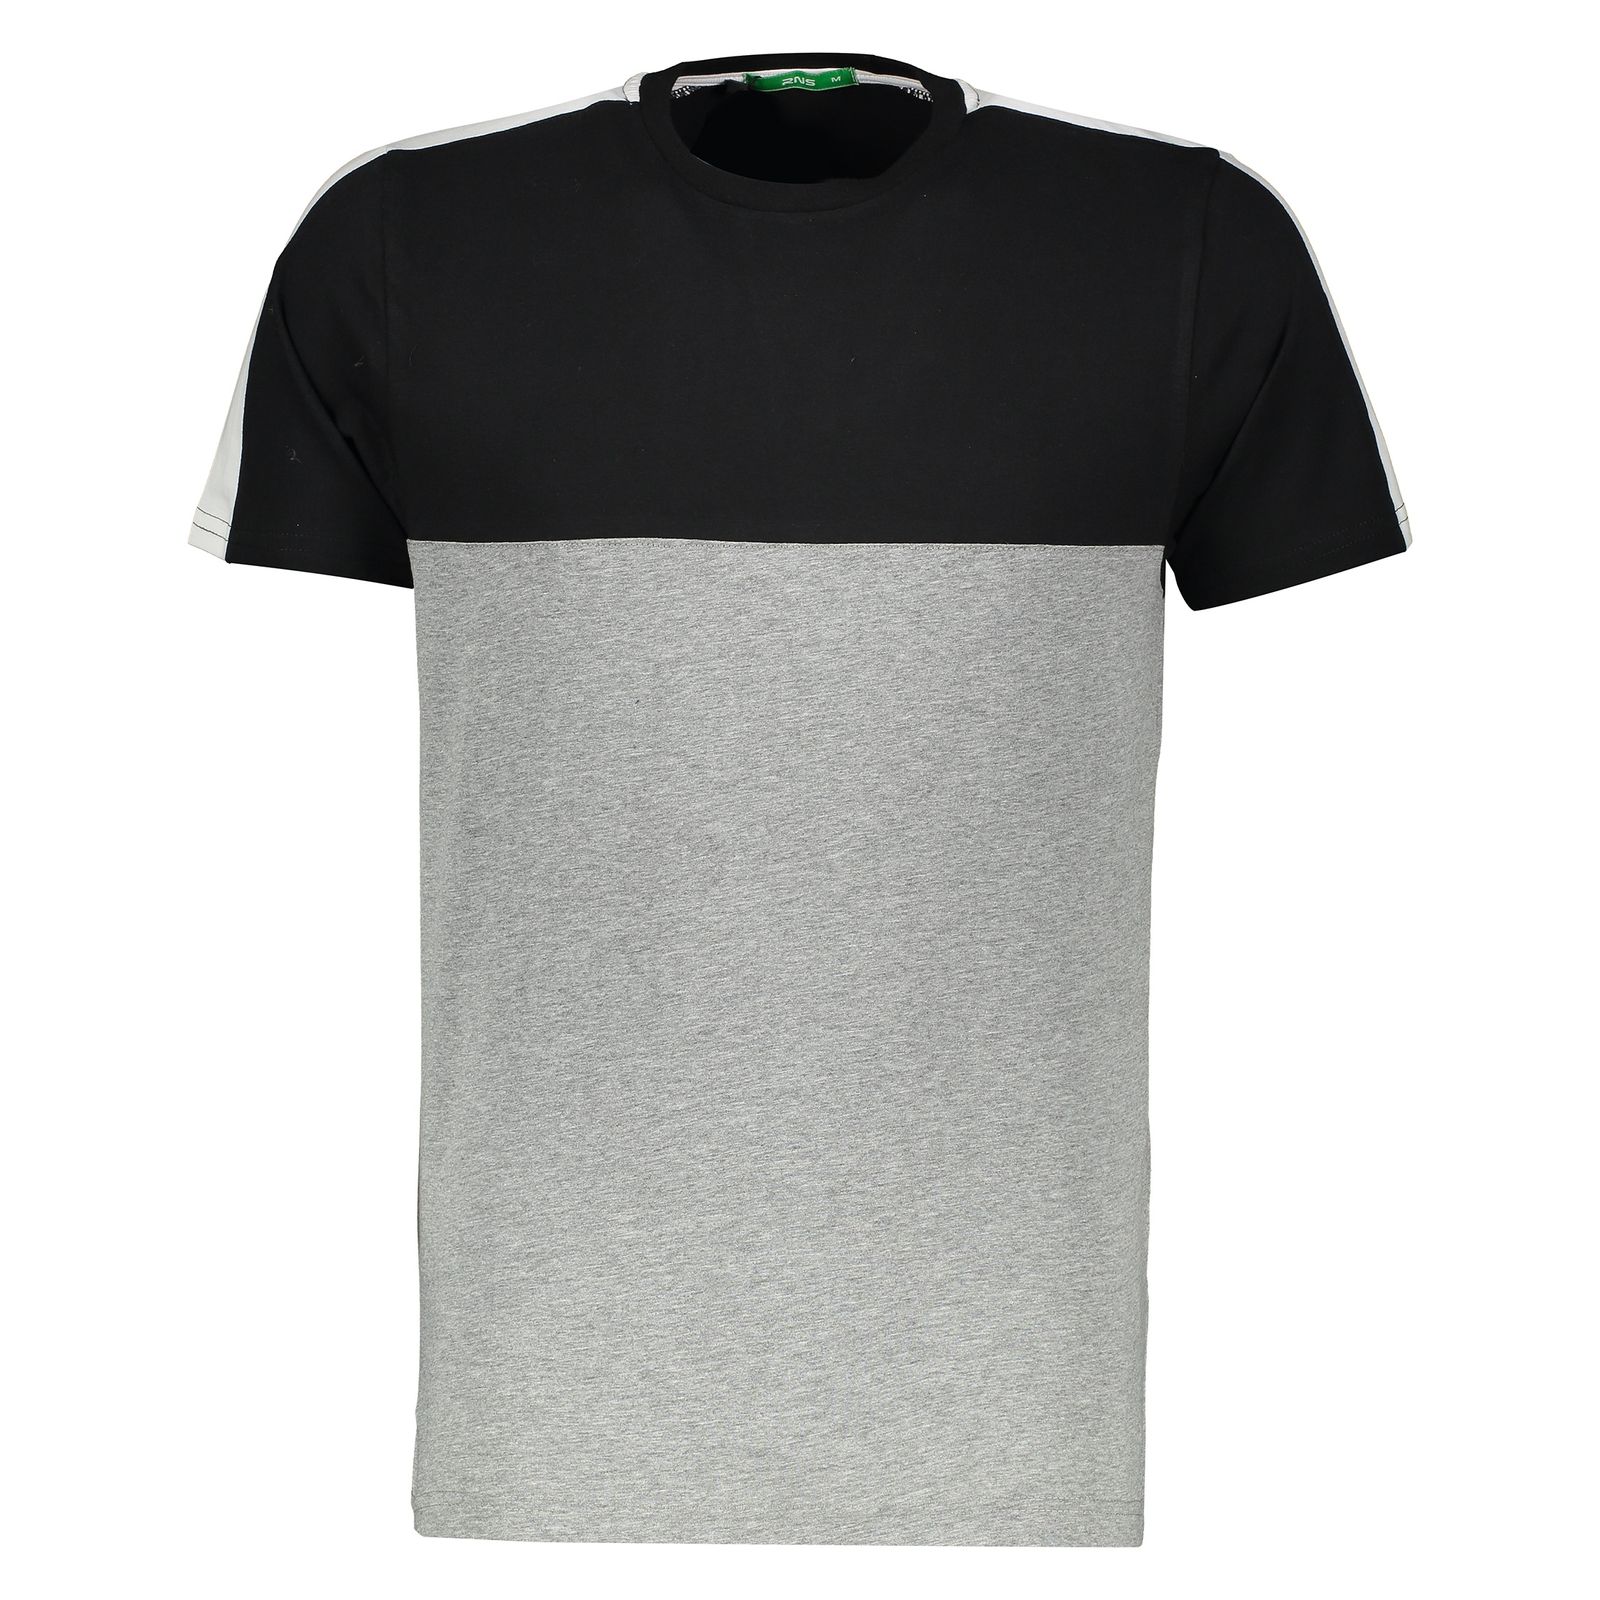 تی شرت مردانه آر ان اس مدل 1131109-99 - مشکی - 2